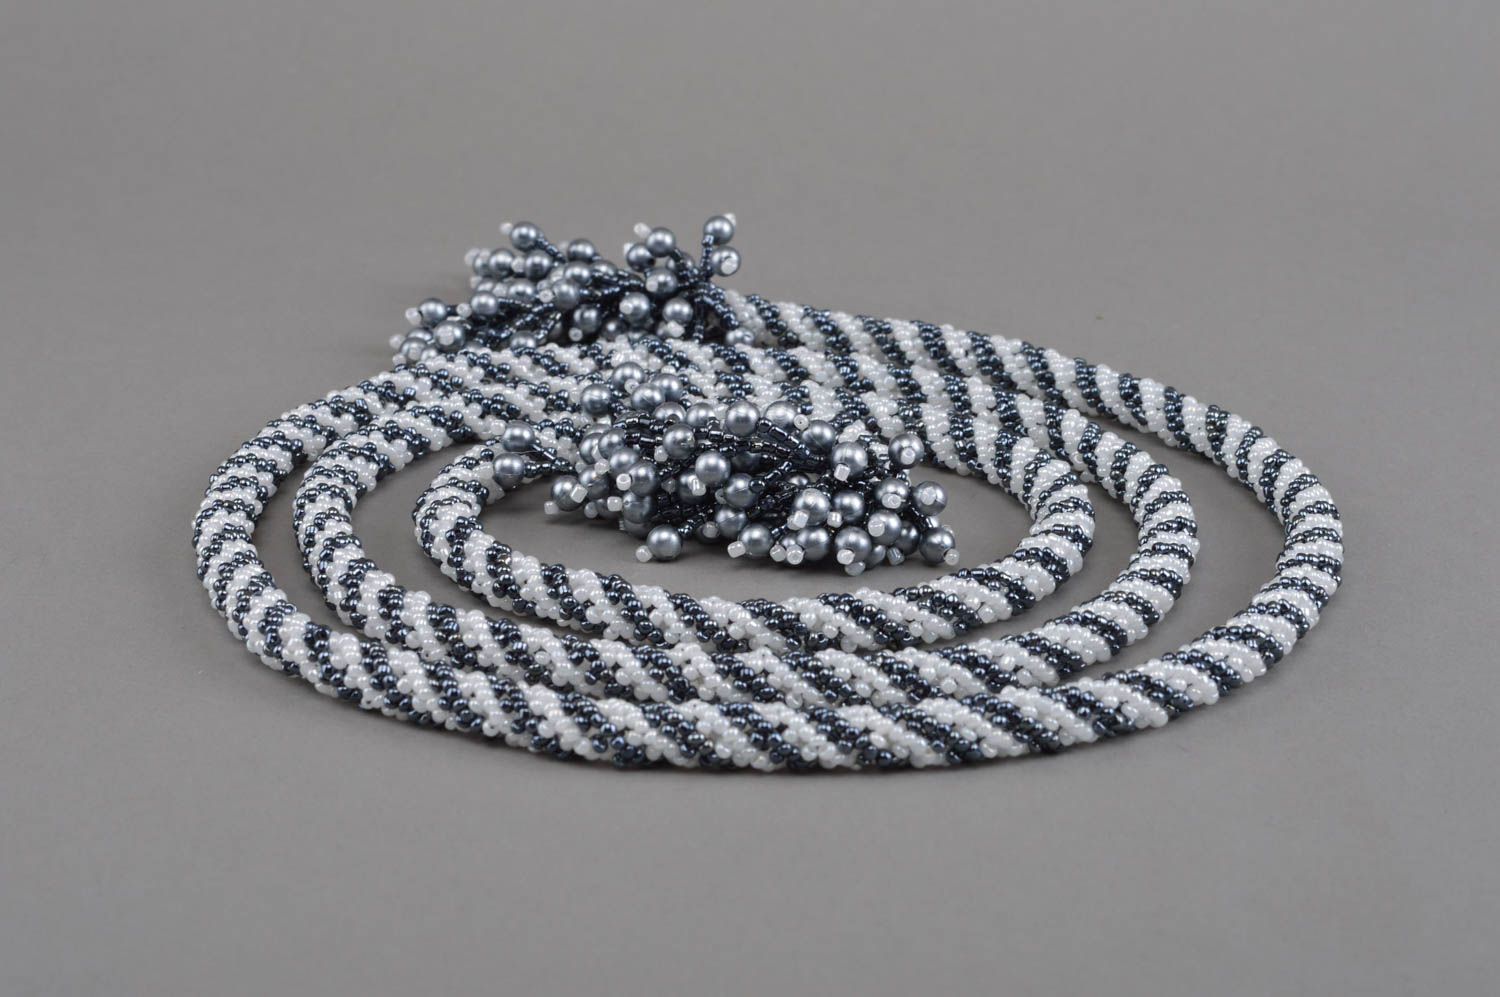 Handmade designer stylish tiebacks created using black and white beads photo 4